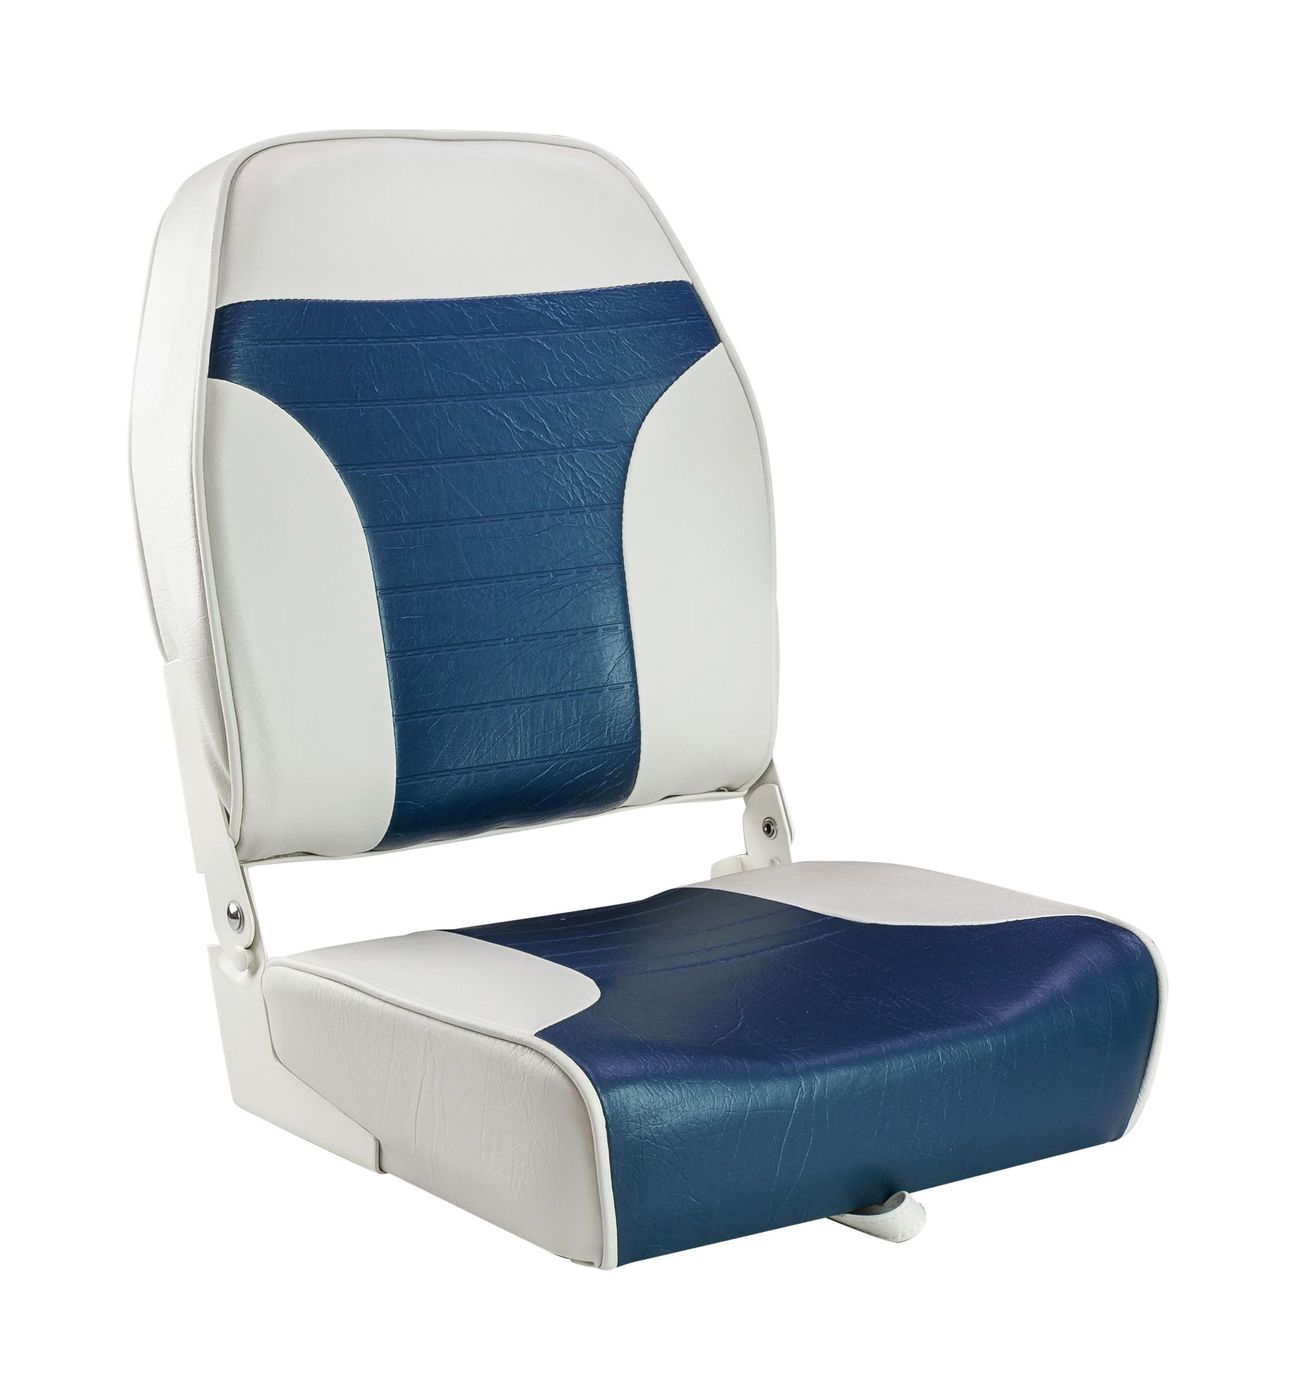 Кресло складное мягкое ECONOMY с высокой спинкой, цвет белый/синий 1040667 кресло складное мягкое economy с низкой спинкой обивка камуфляжная ткань 1040627